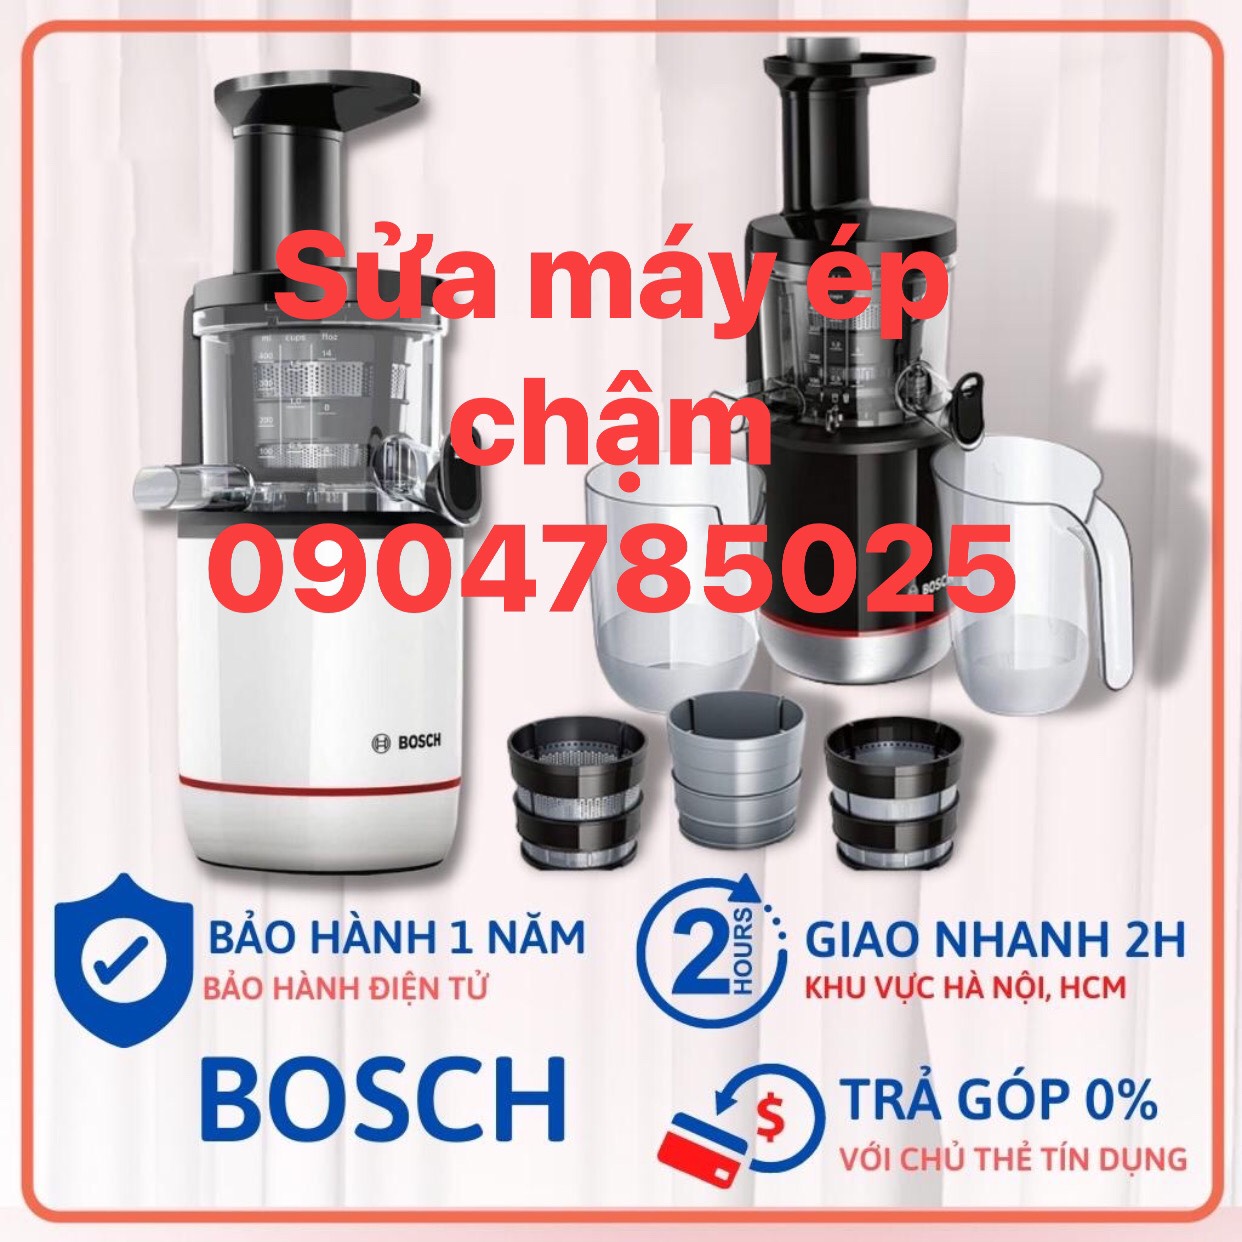 Sửa chữa máy ép chậm Bosch tại Hà Nội